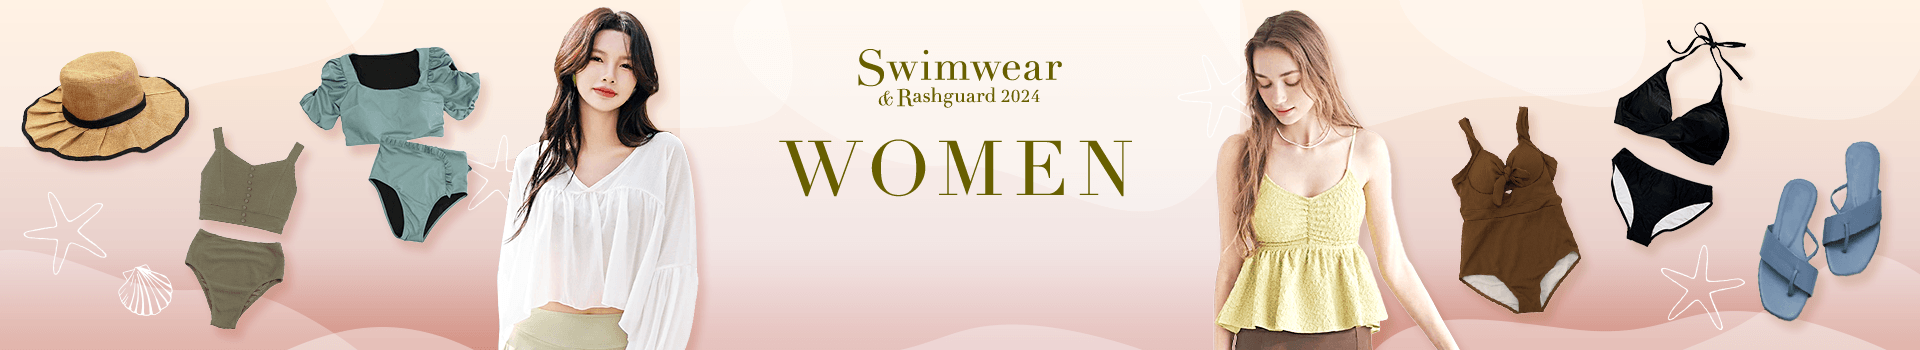 WOMEN 2024 Swimwear